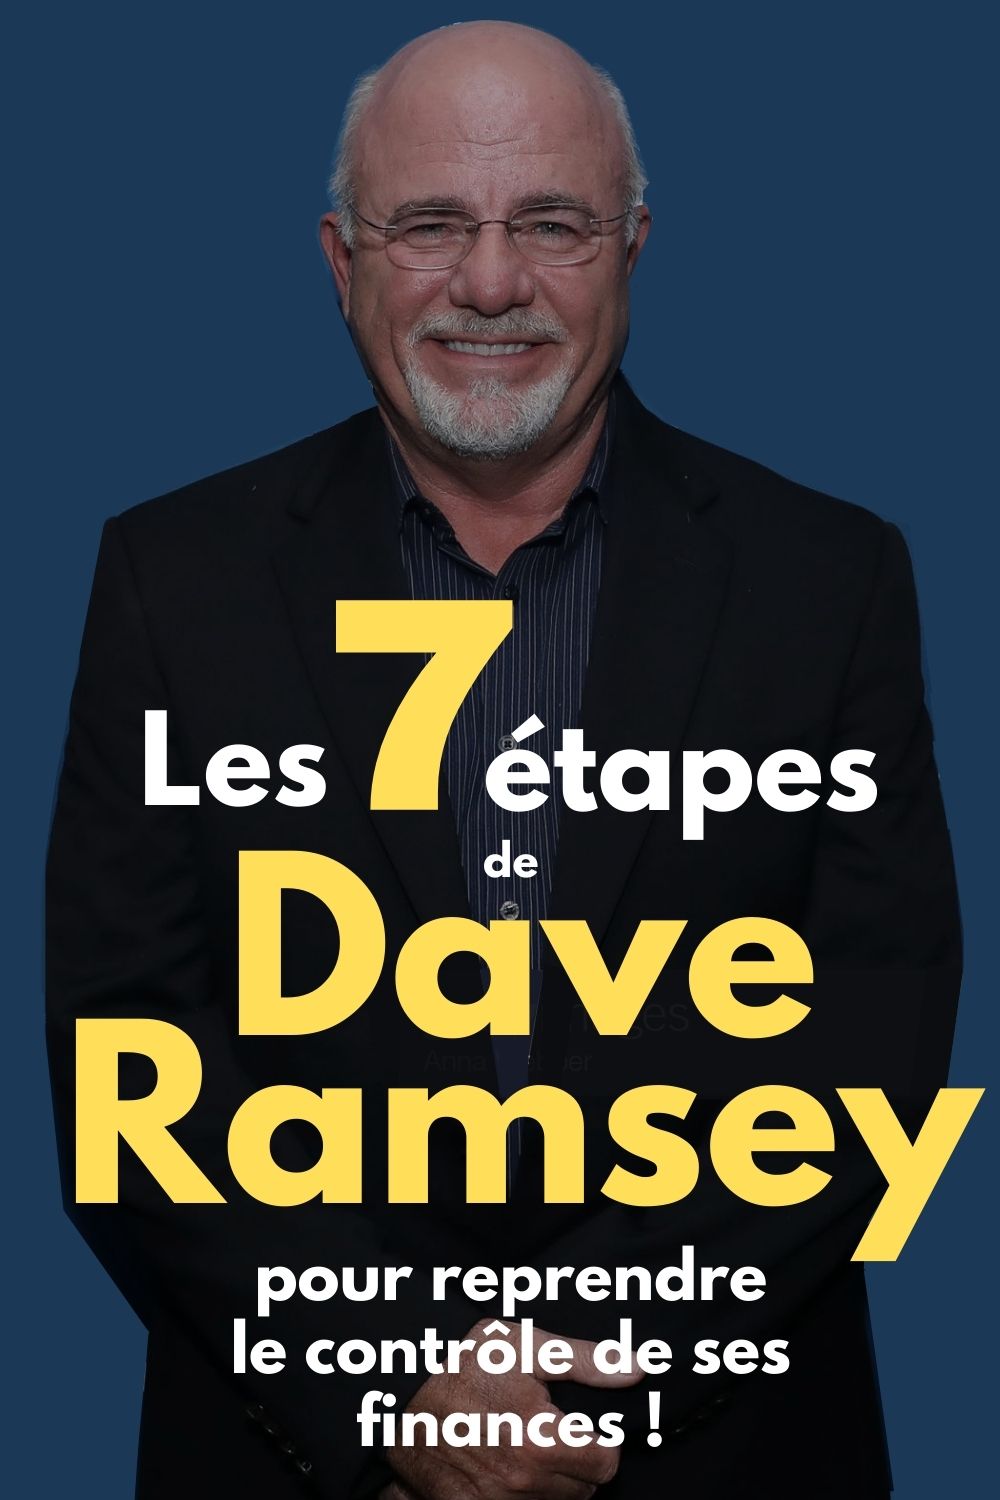 Les 7 étapes de Dave Ramsey pour reprendre le contrôle de ses finances